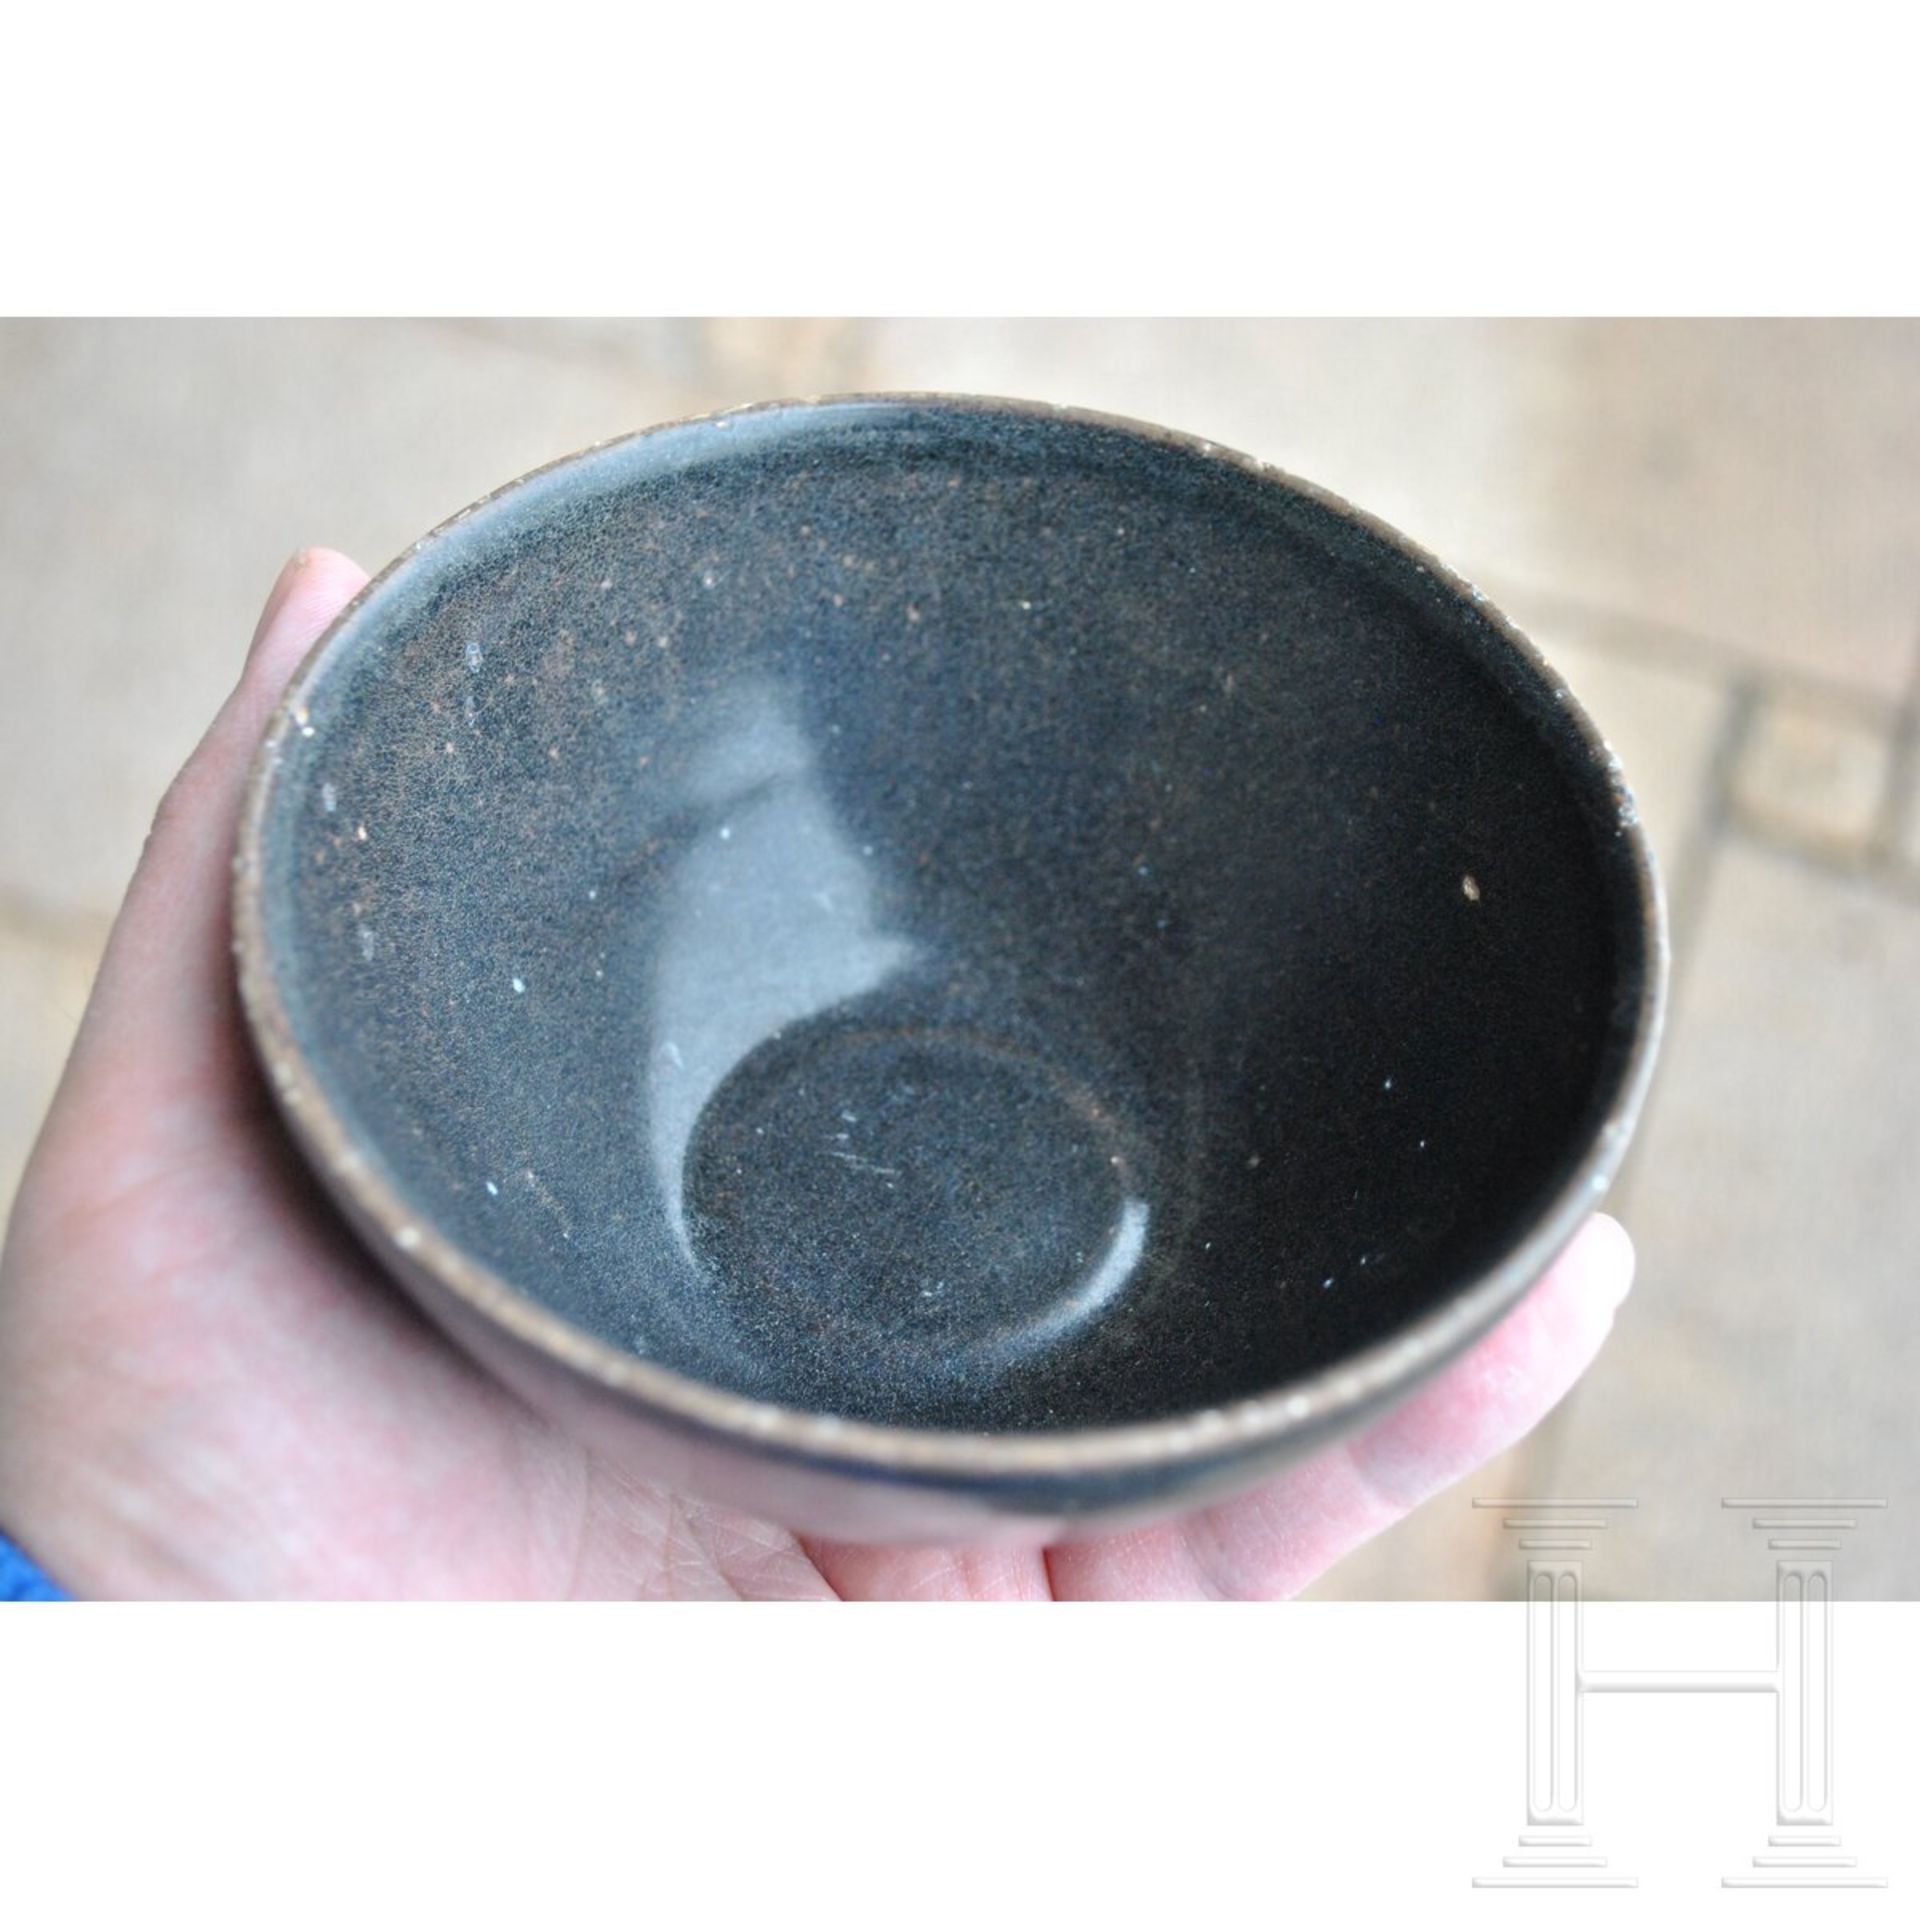 Jizhou-Teeschale, schwarz glasiert, südliche Song-Dynastie (12. - 13. Jhdt.) - Bild 8 aus 17